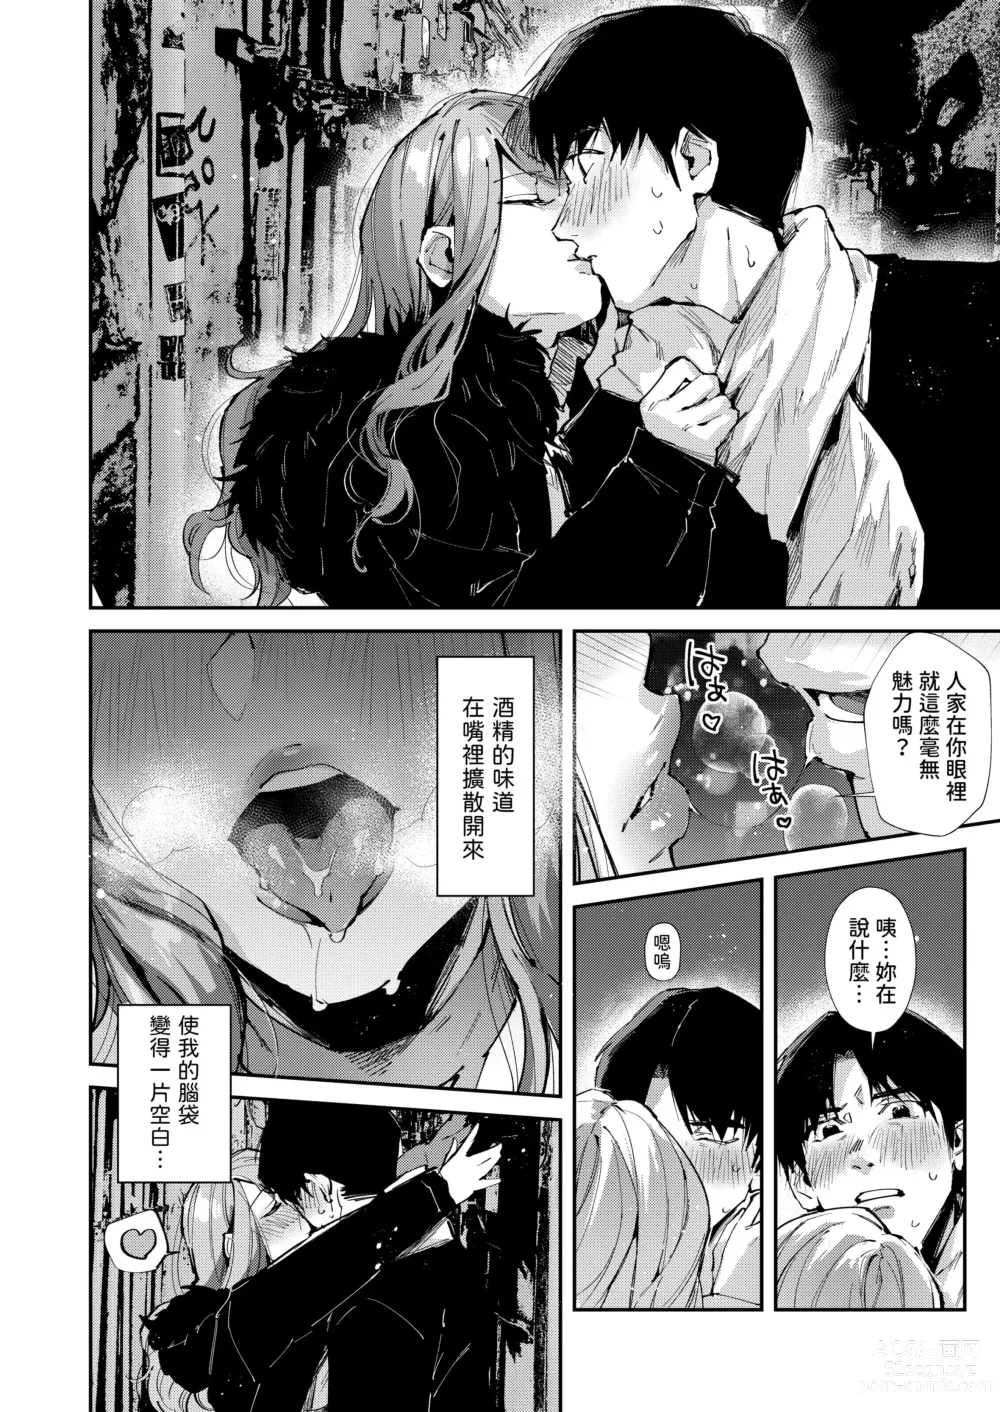 Page 5 of doujinshi Ore no Gal wa Koko ni Iru.